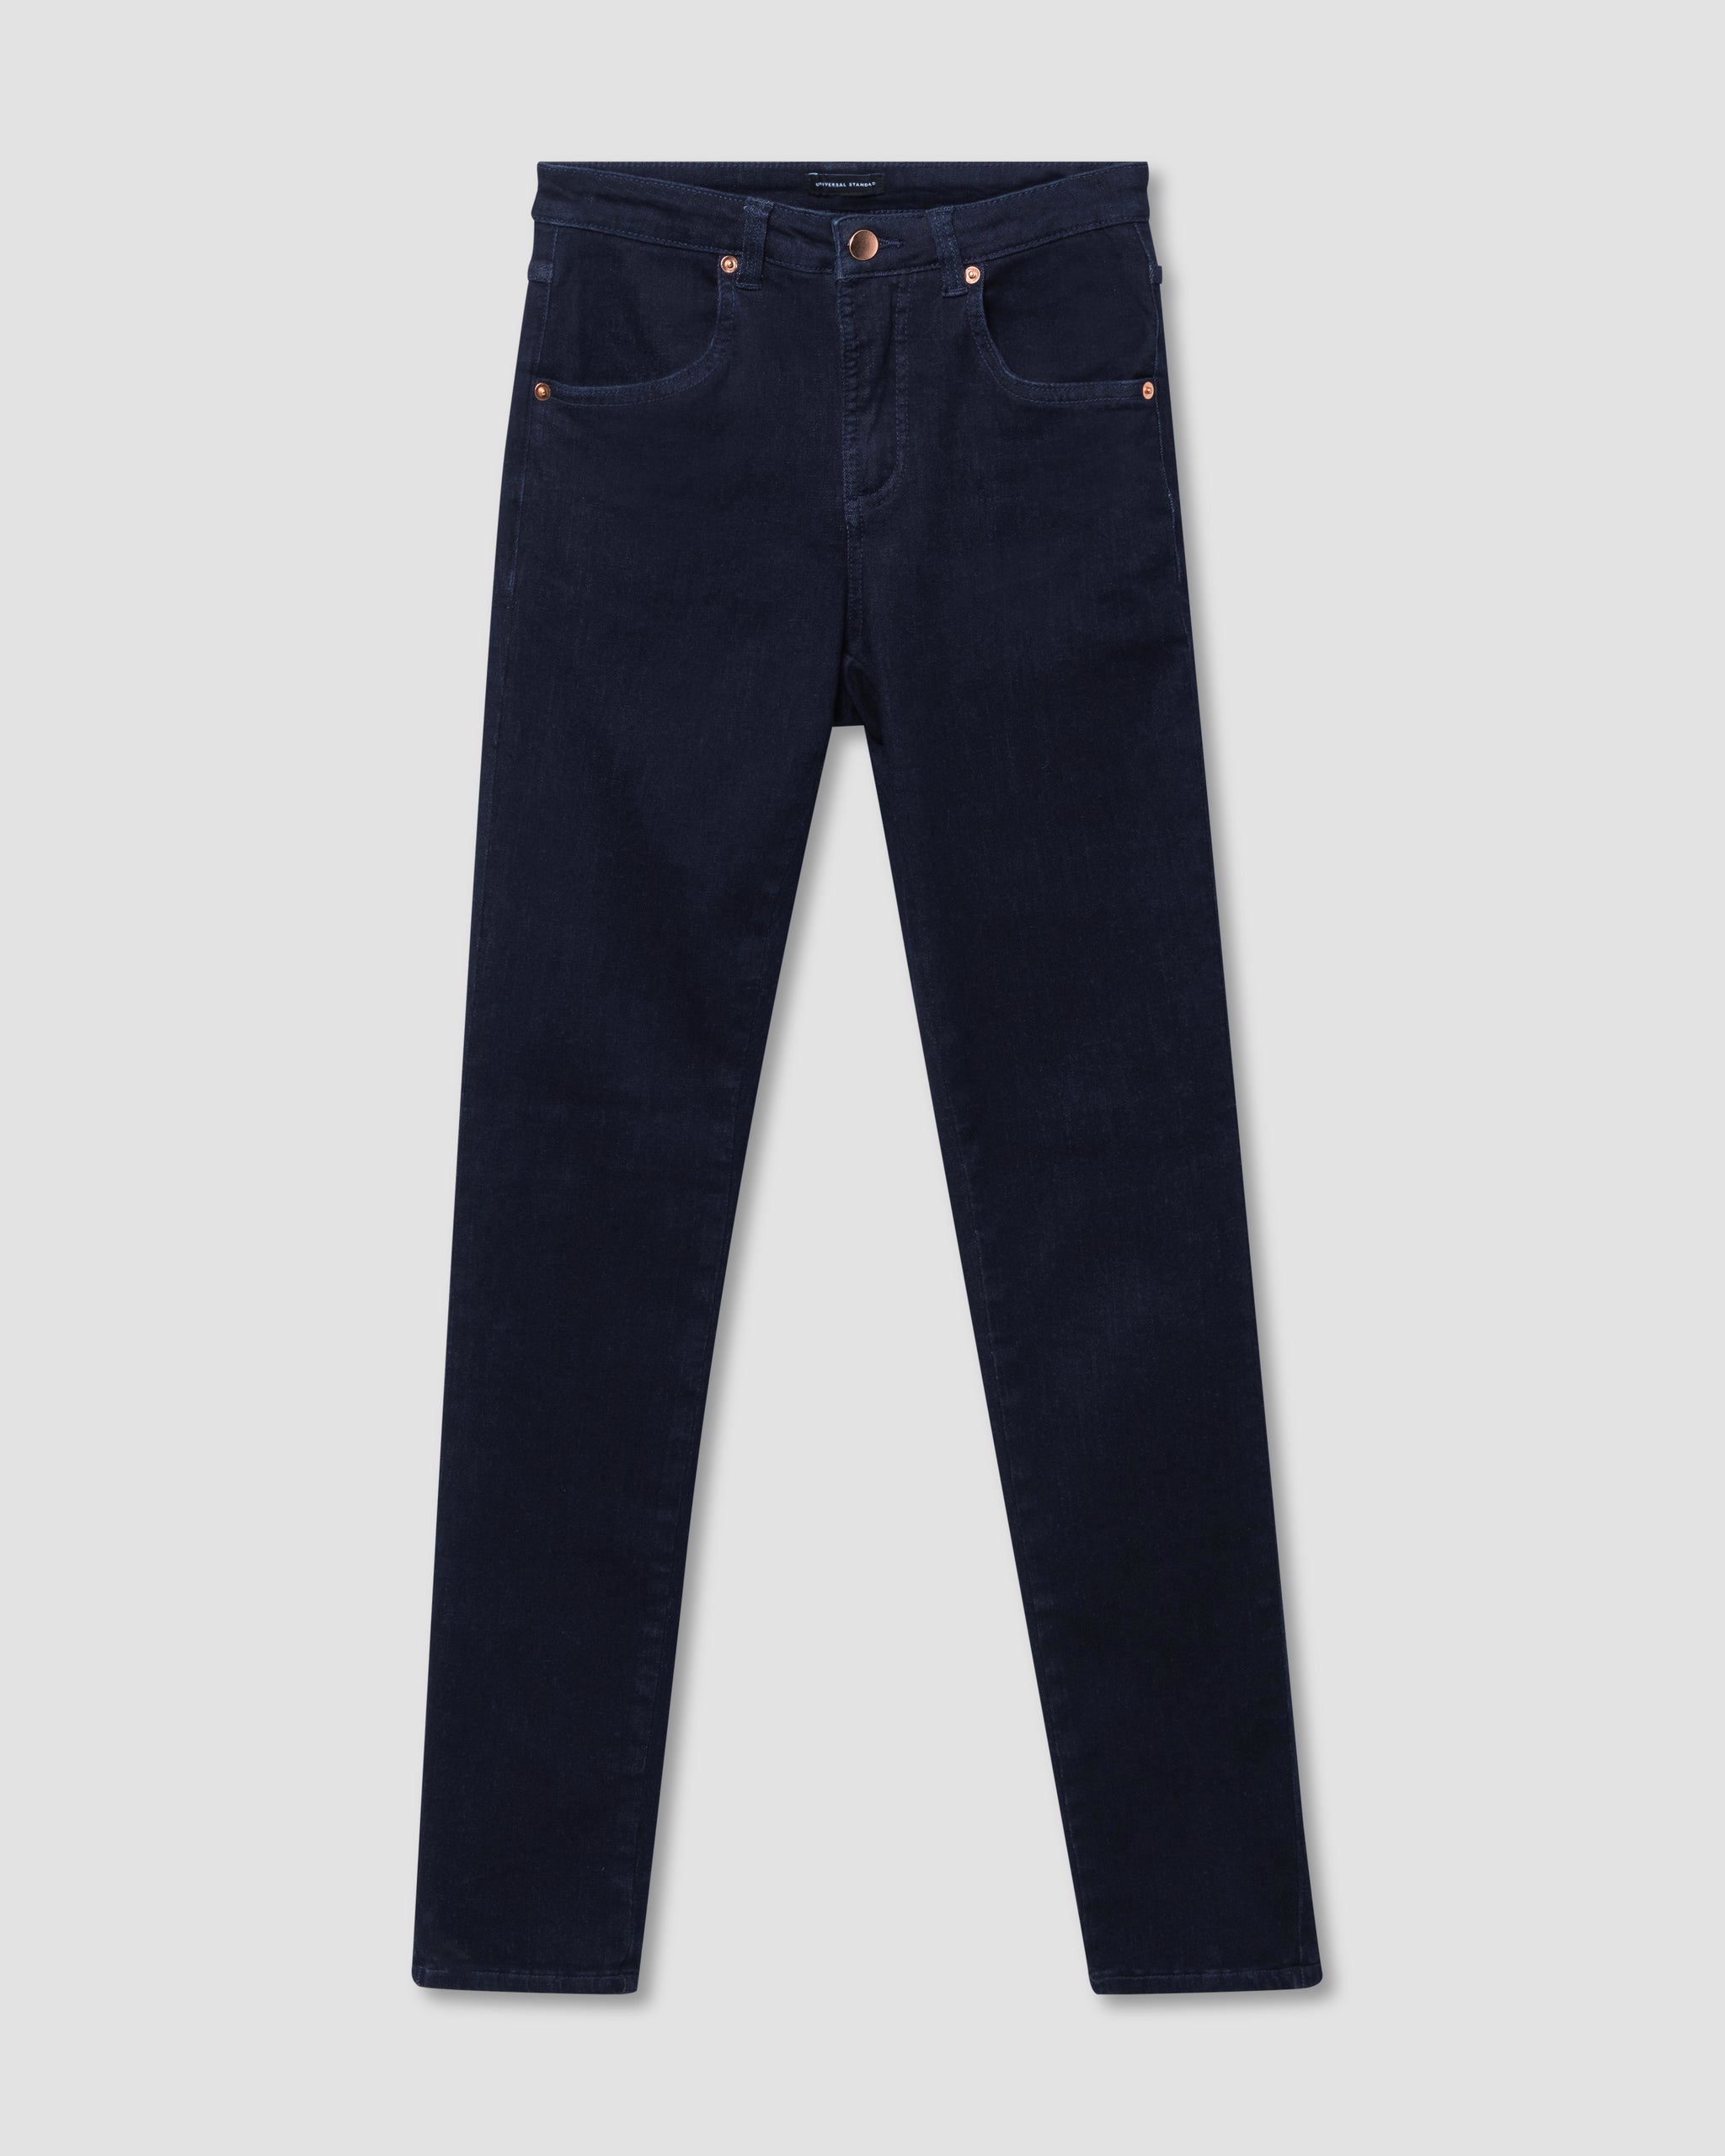 Seine High Rise Skinny Jeans 32 Inch - Dark Indigo